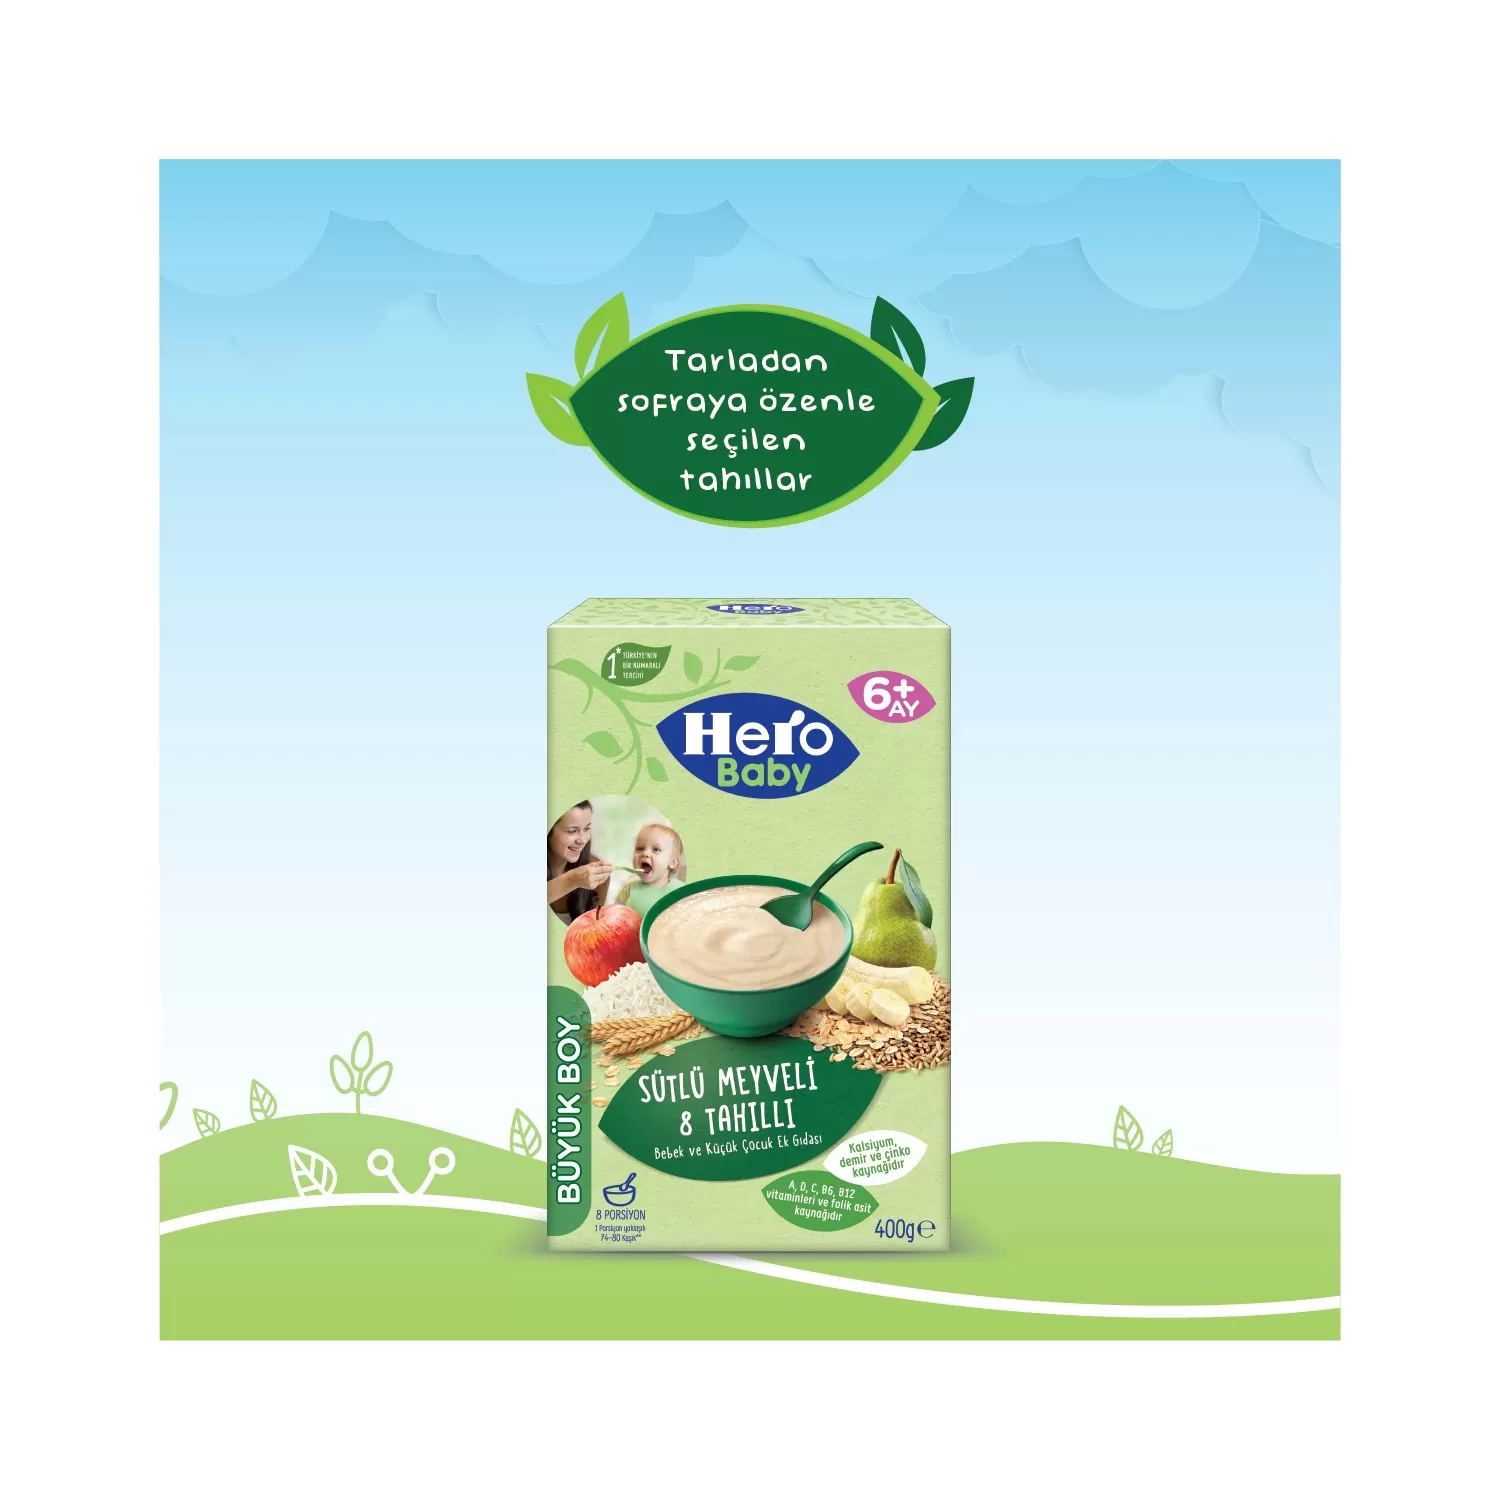 Hero Baby Sütlü Meyveli 8 Tahıllı Kaşık Mama 400 gr 3'lü Paket